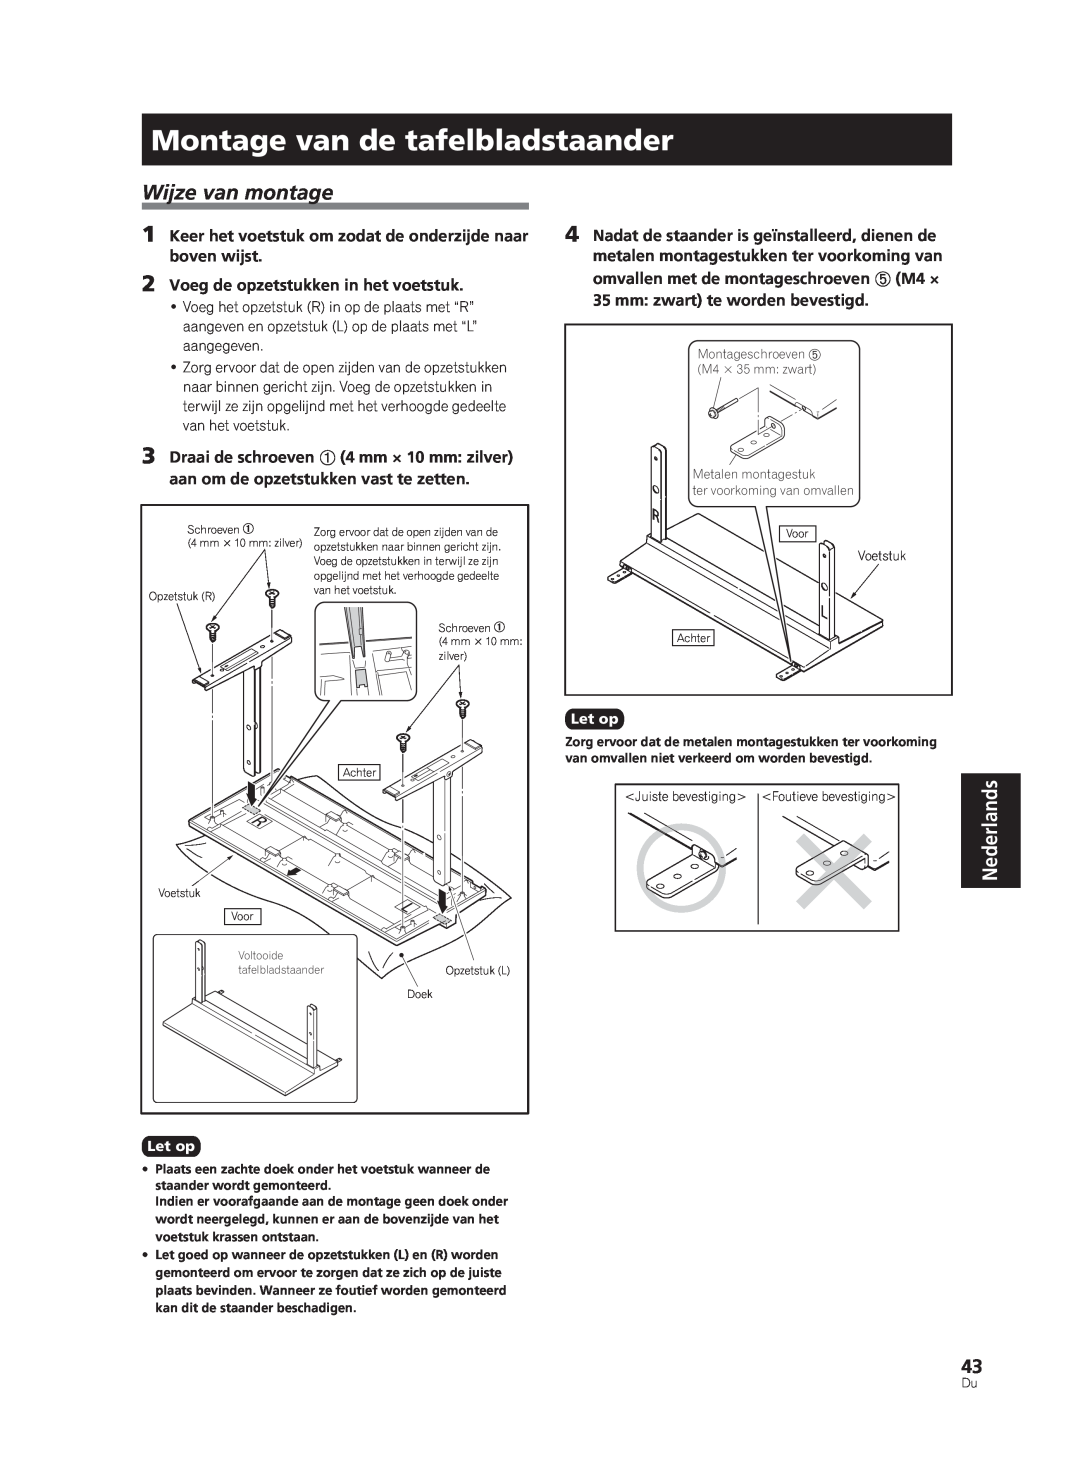 Pioneer PDK-TS33A, KRP-TS02 manual Montage van de tafelbladstaander, Wijze van montage, Nederlands 